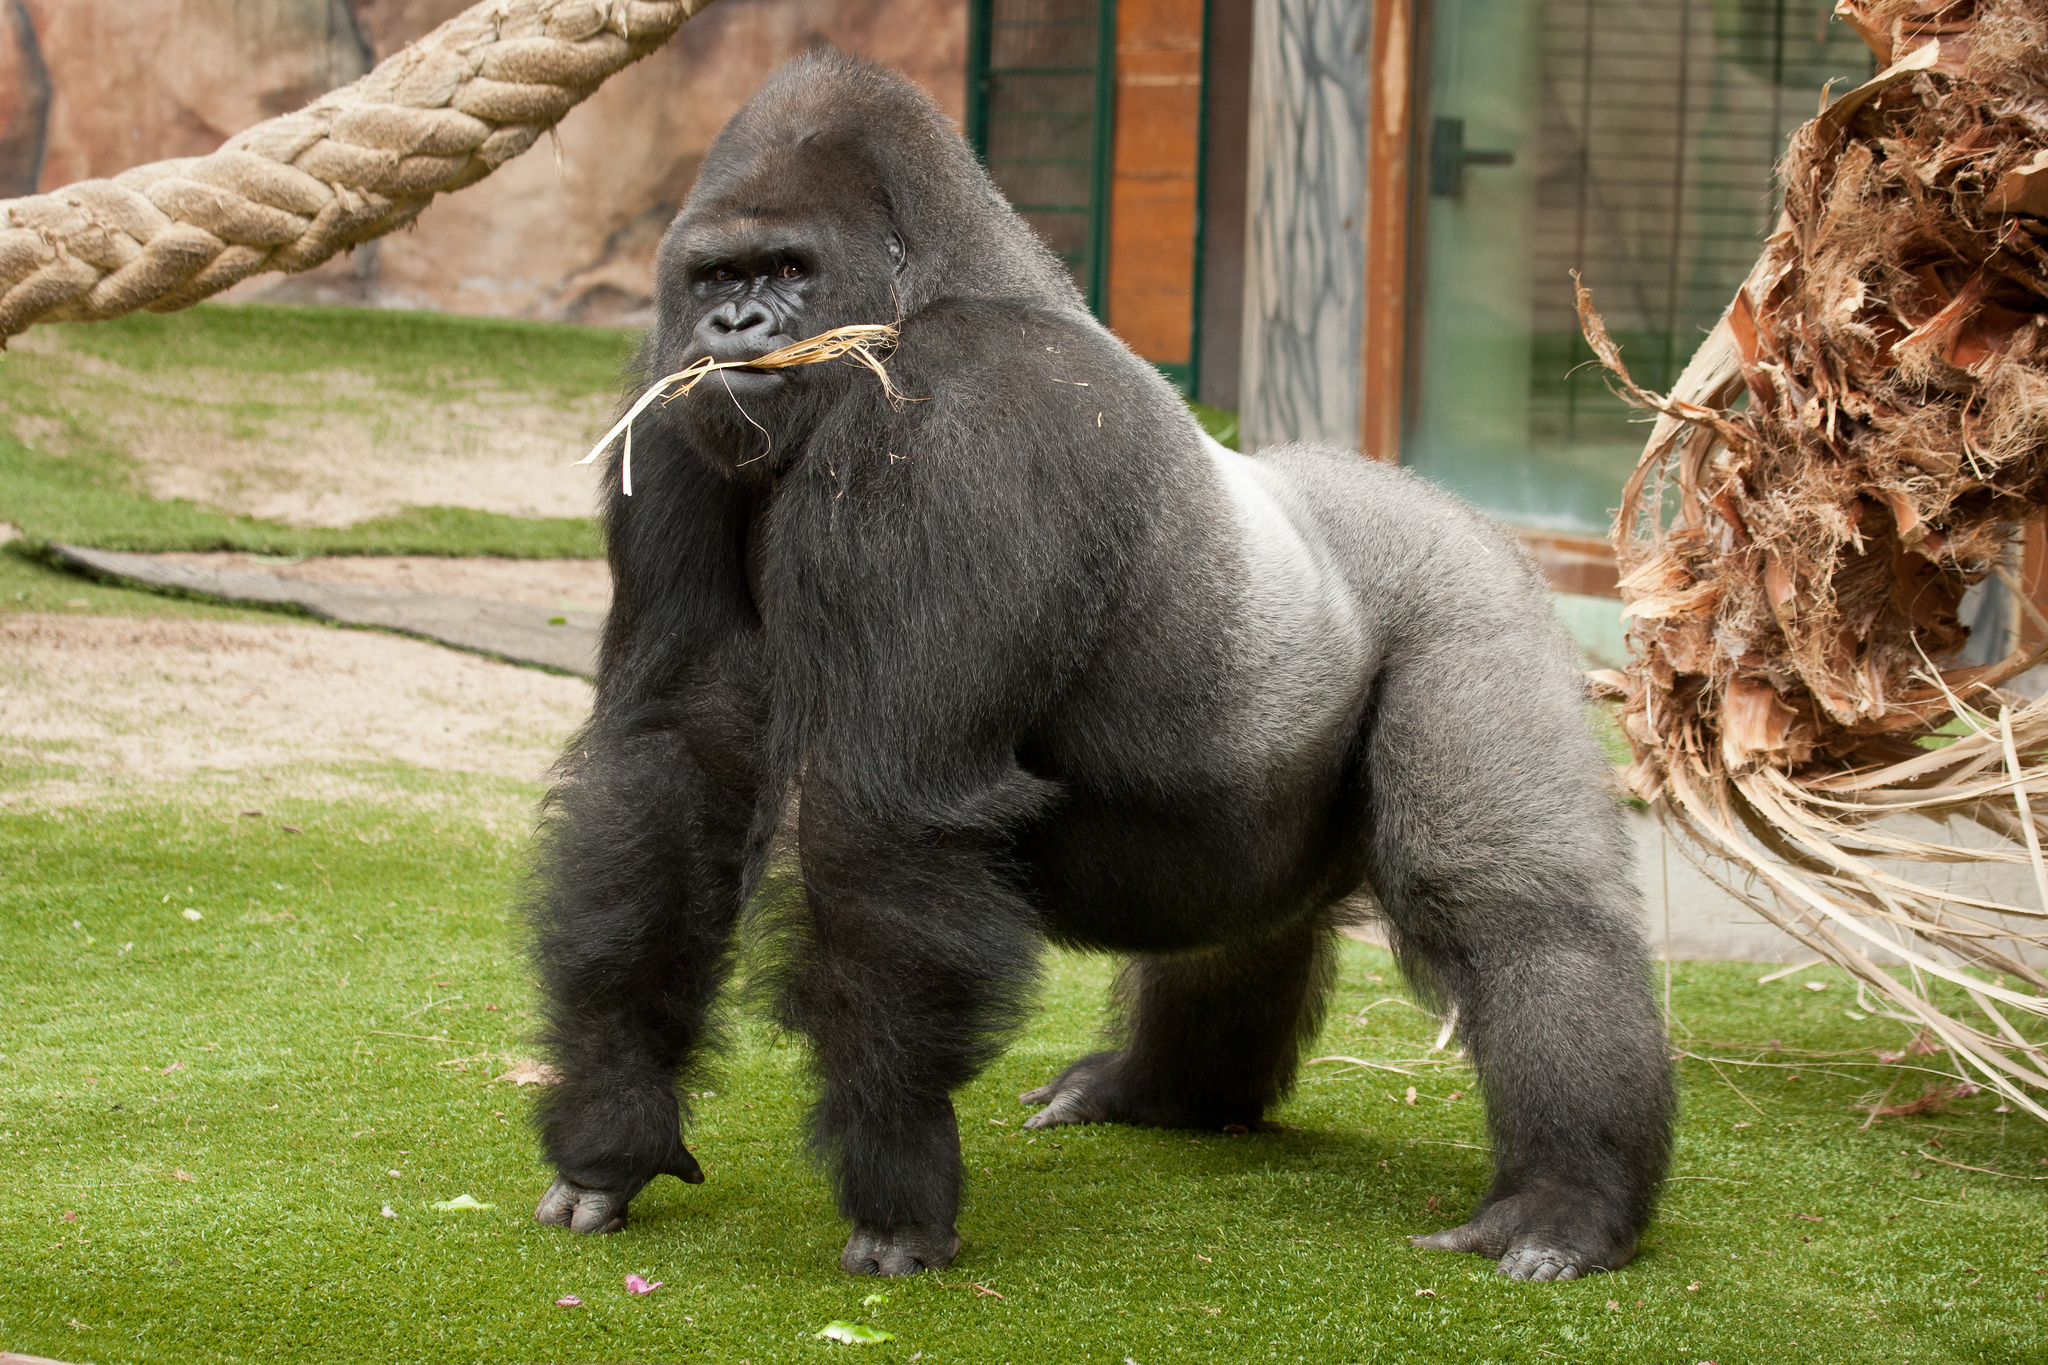  Почему гориллы посильнее штангистов. Ведь они полдня дремлют и не тренятся?